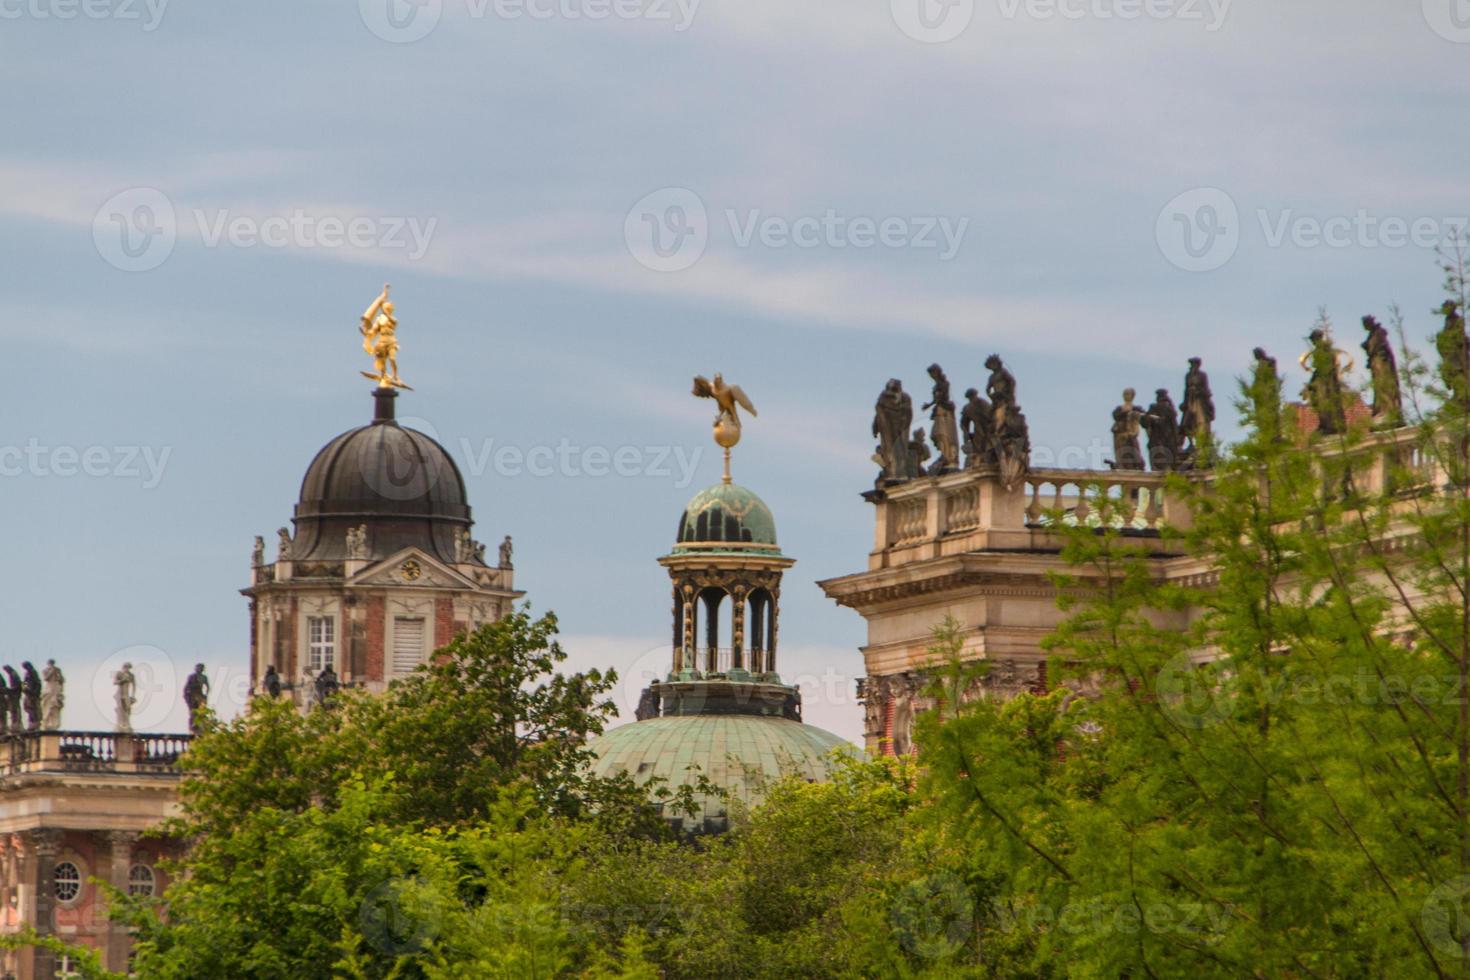 det nya palatset i potsdam, tyskland på Unescos världsarvslista foto